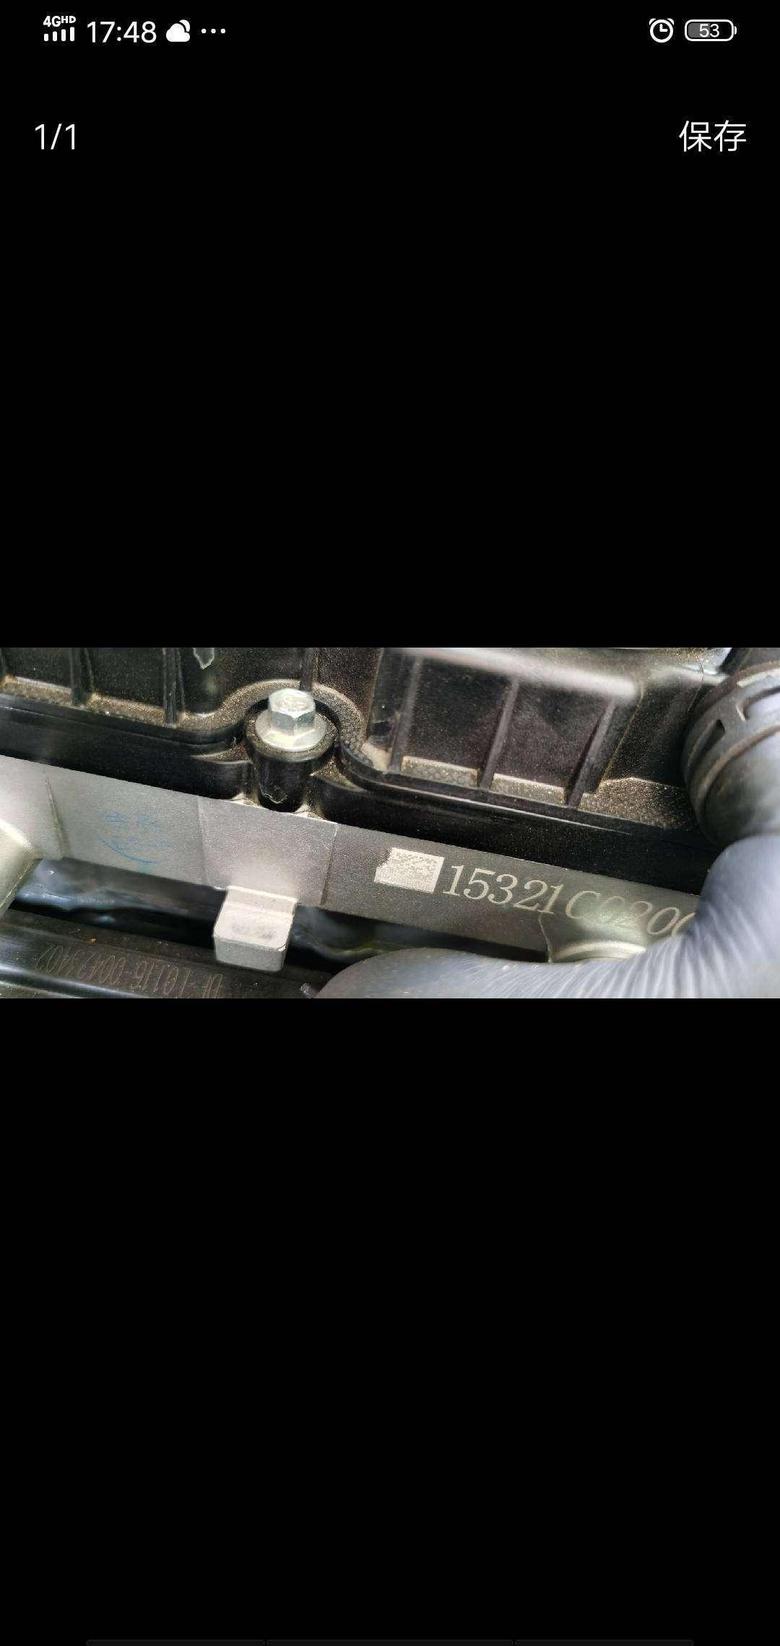 传祺gs4 发动机的缸盖侧面都是有二维码和钢印的数字码，用手写的怀疑是配件出厂的